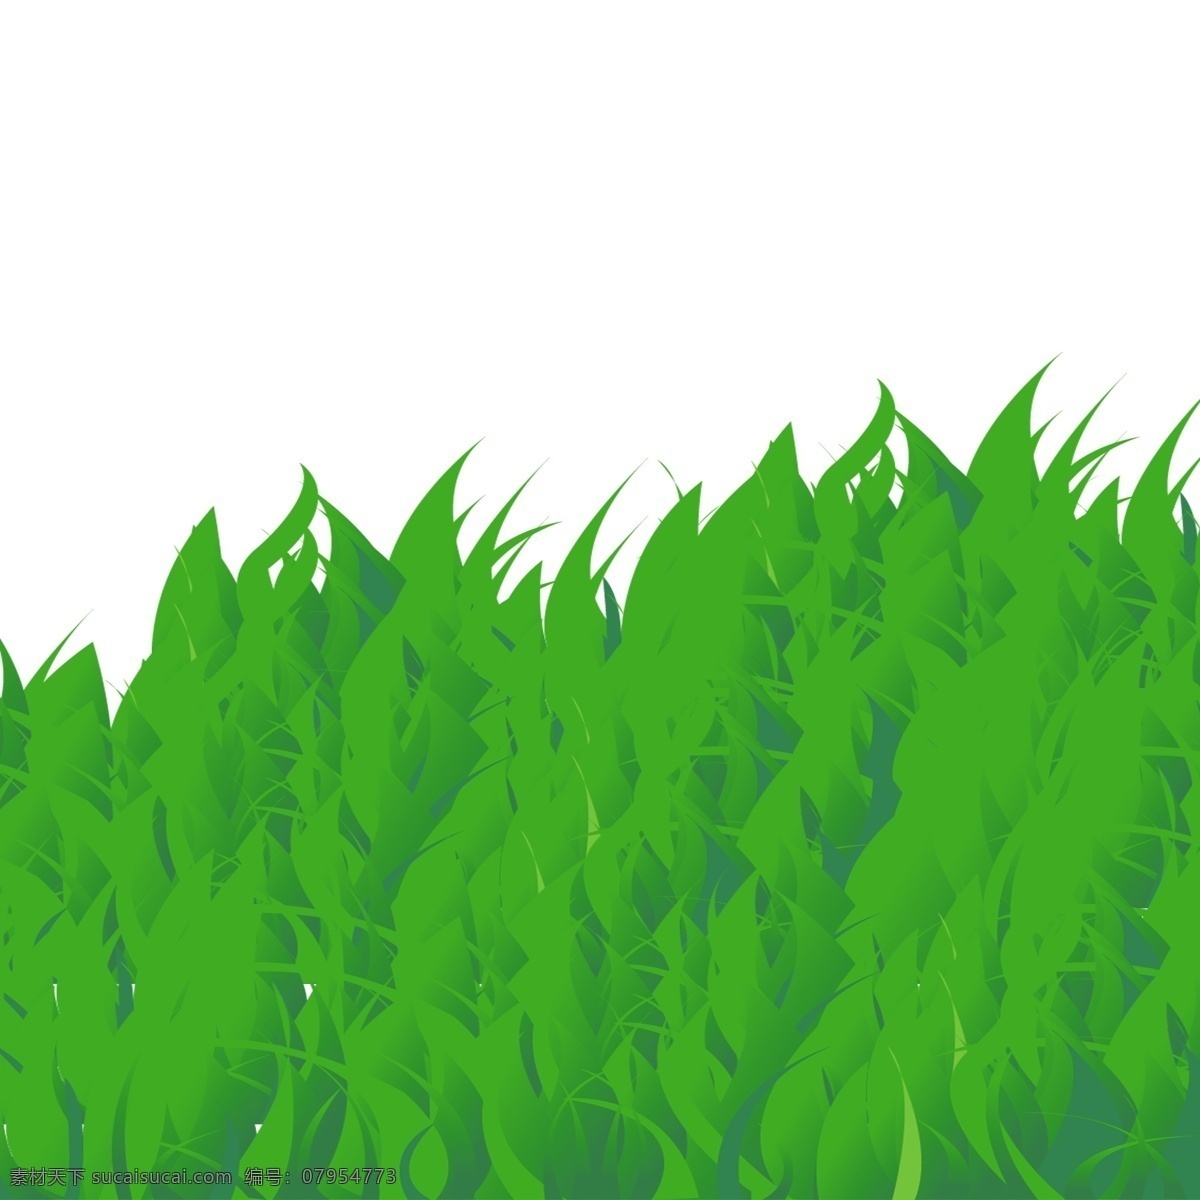 草地草皮元素 草地 草地元素 草地素材 草坡 草皮 草 青草 青草元素 青草素材 绿色 绿色元素 绿色素材 绿色植物 植物元素 植物素材 植物装饰 分层